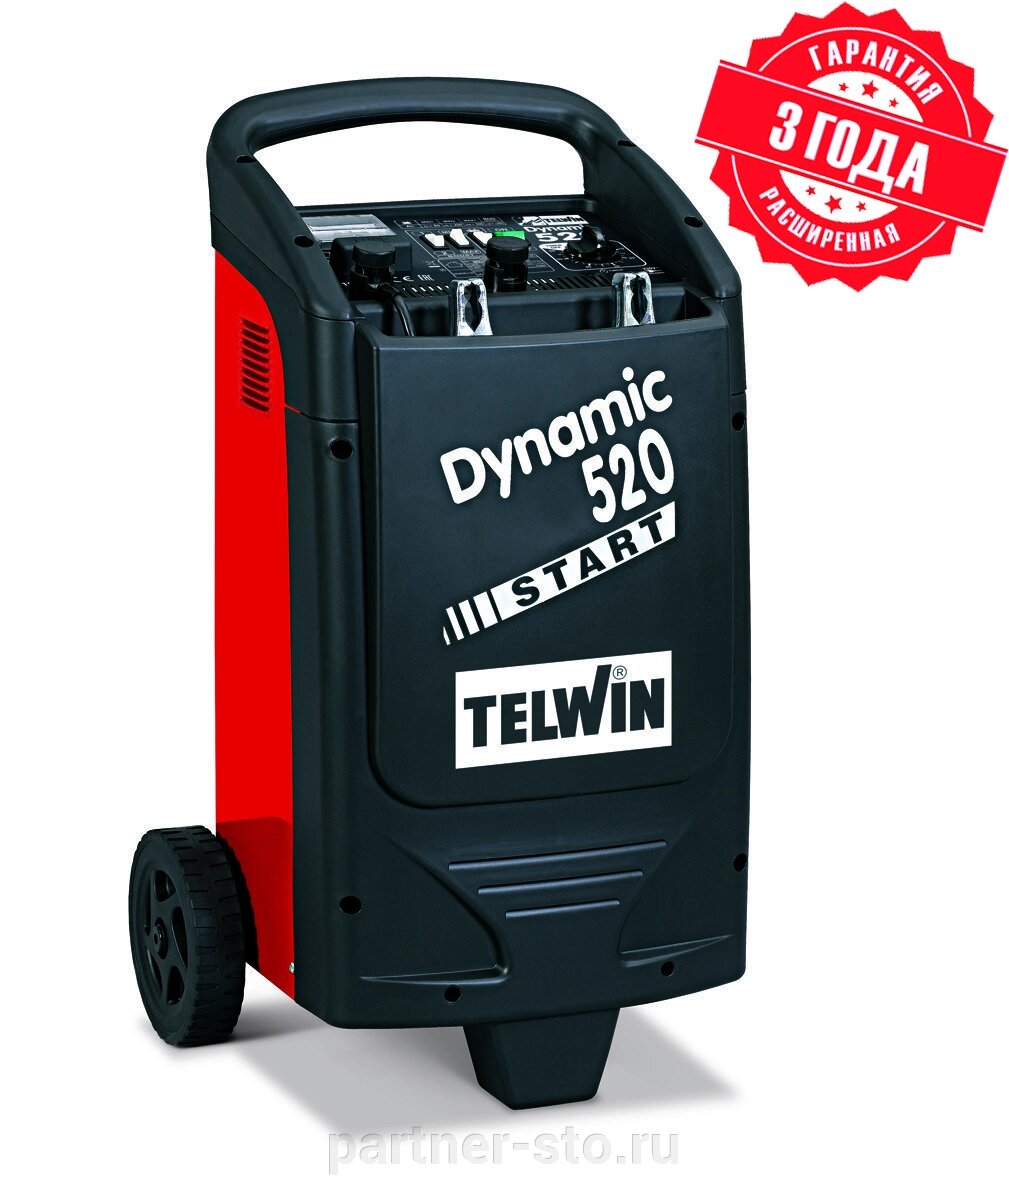 Пуско-зарядное устройство TELWIN DYNAMIC 520 START 230V 12-24V от компании Партнёр-СТО - оборудование и инструмент для автосервиса и шиномонтажа. - фото 1